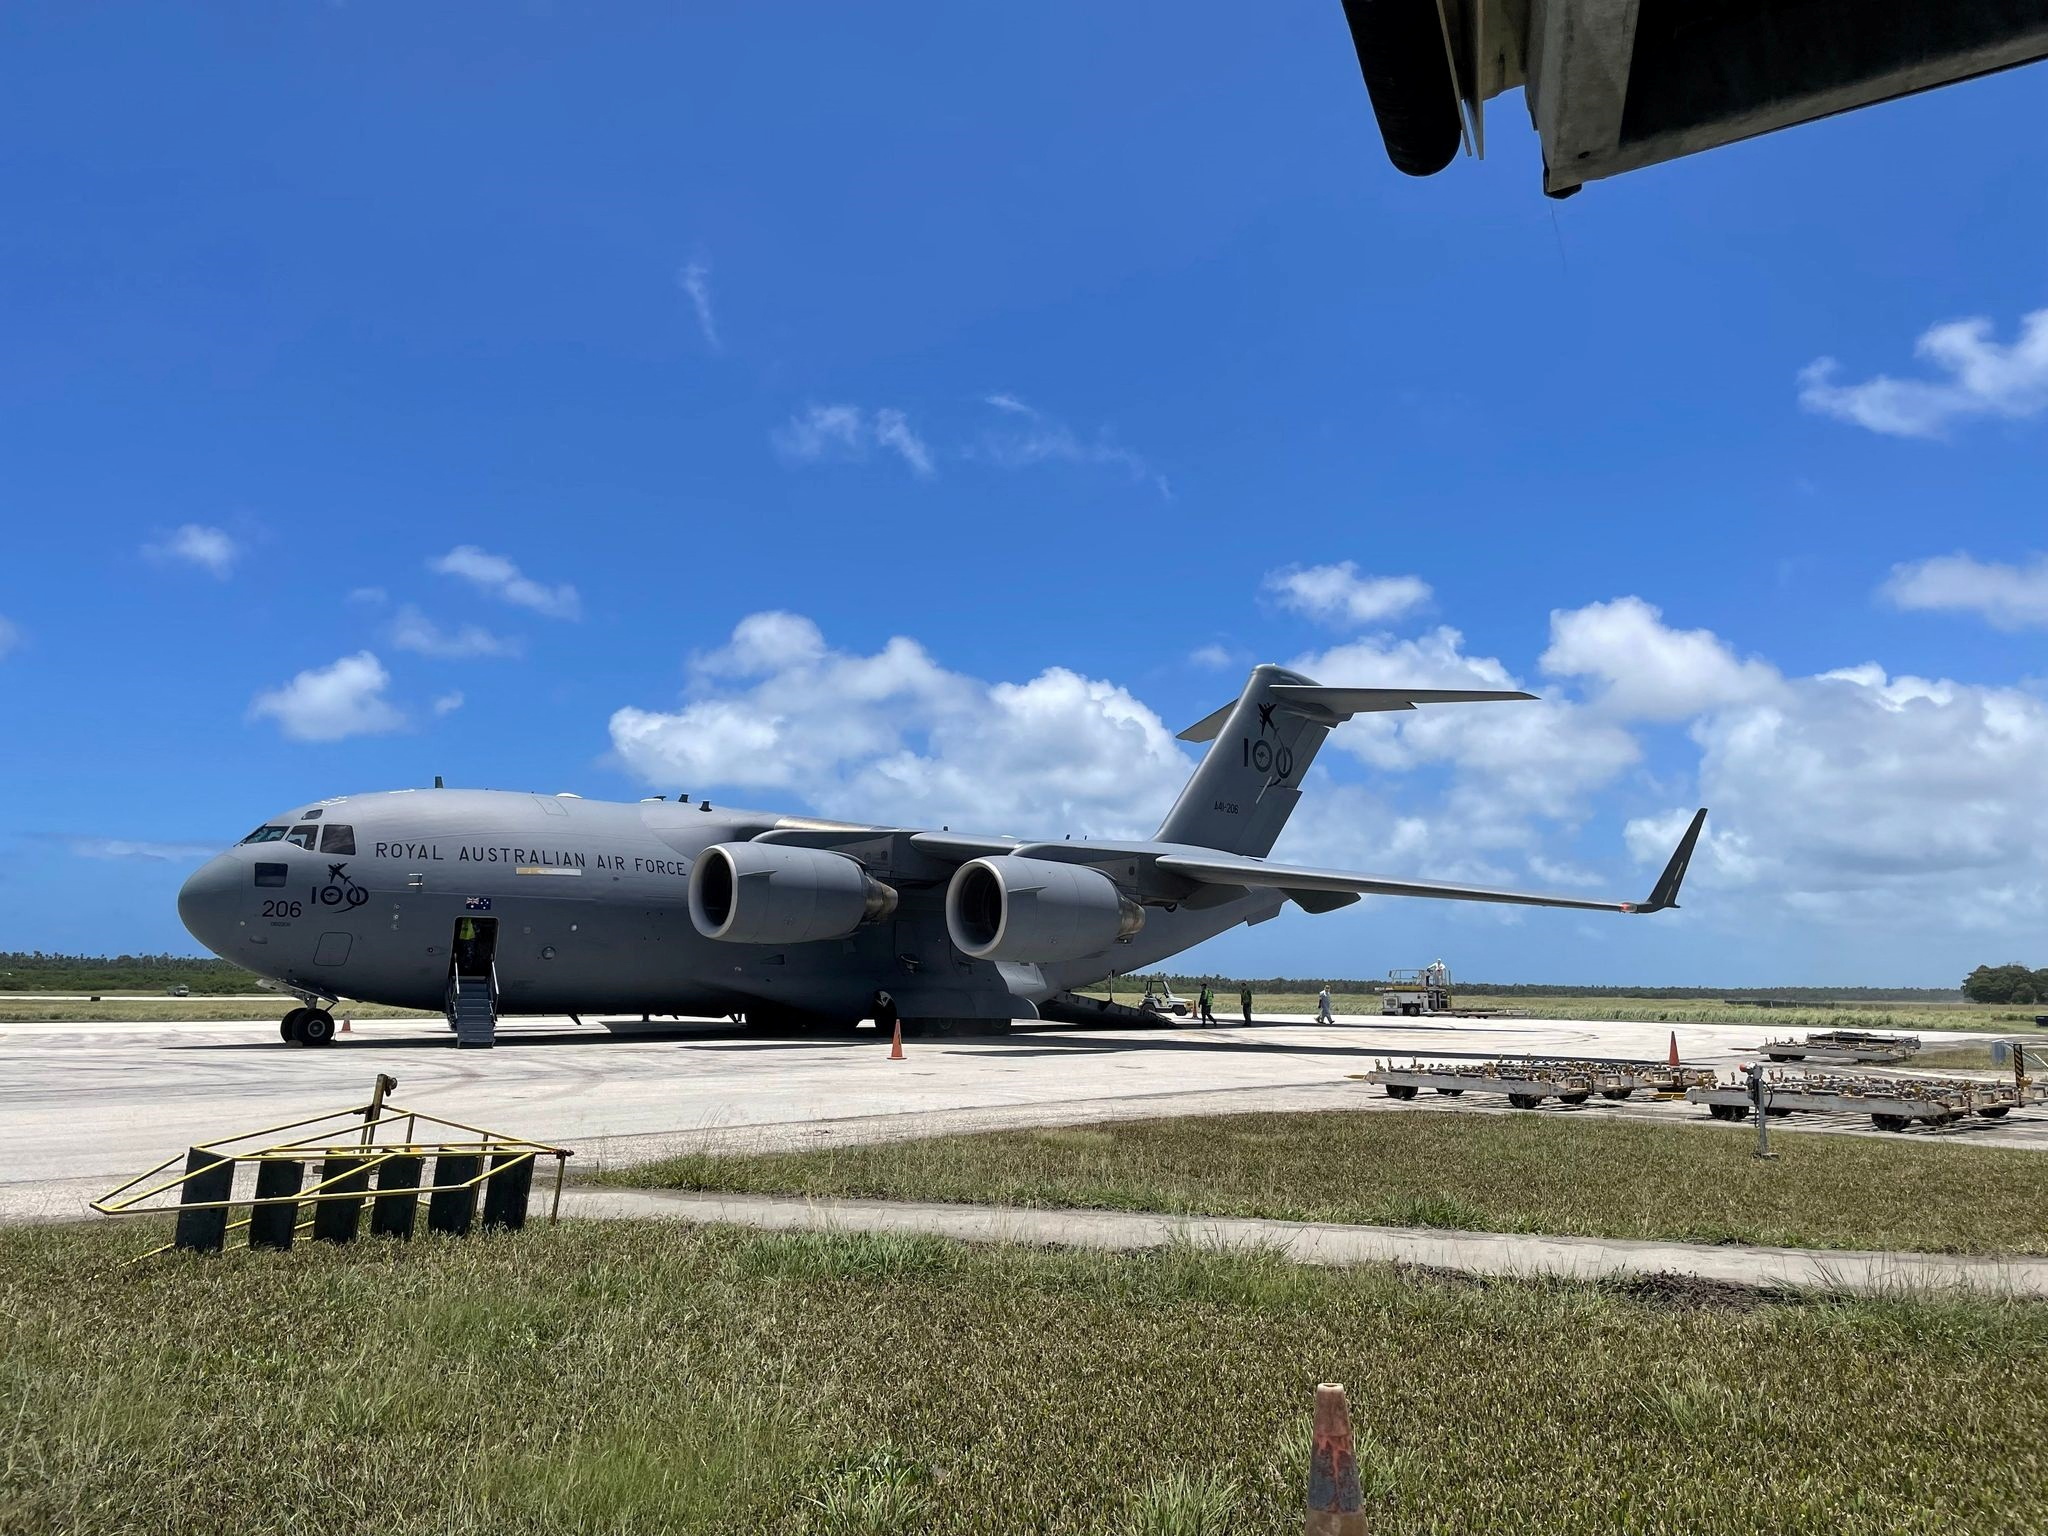 Νησιά Τόνγκα: Αεροπλάνο μετέφερε ανθρωπιστική βοήθεια αλλά γύρισε πίσω λόγω κρούσματος κορονοϊού